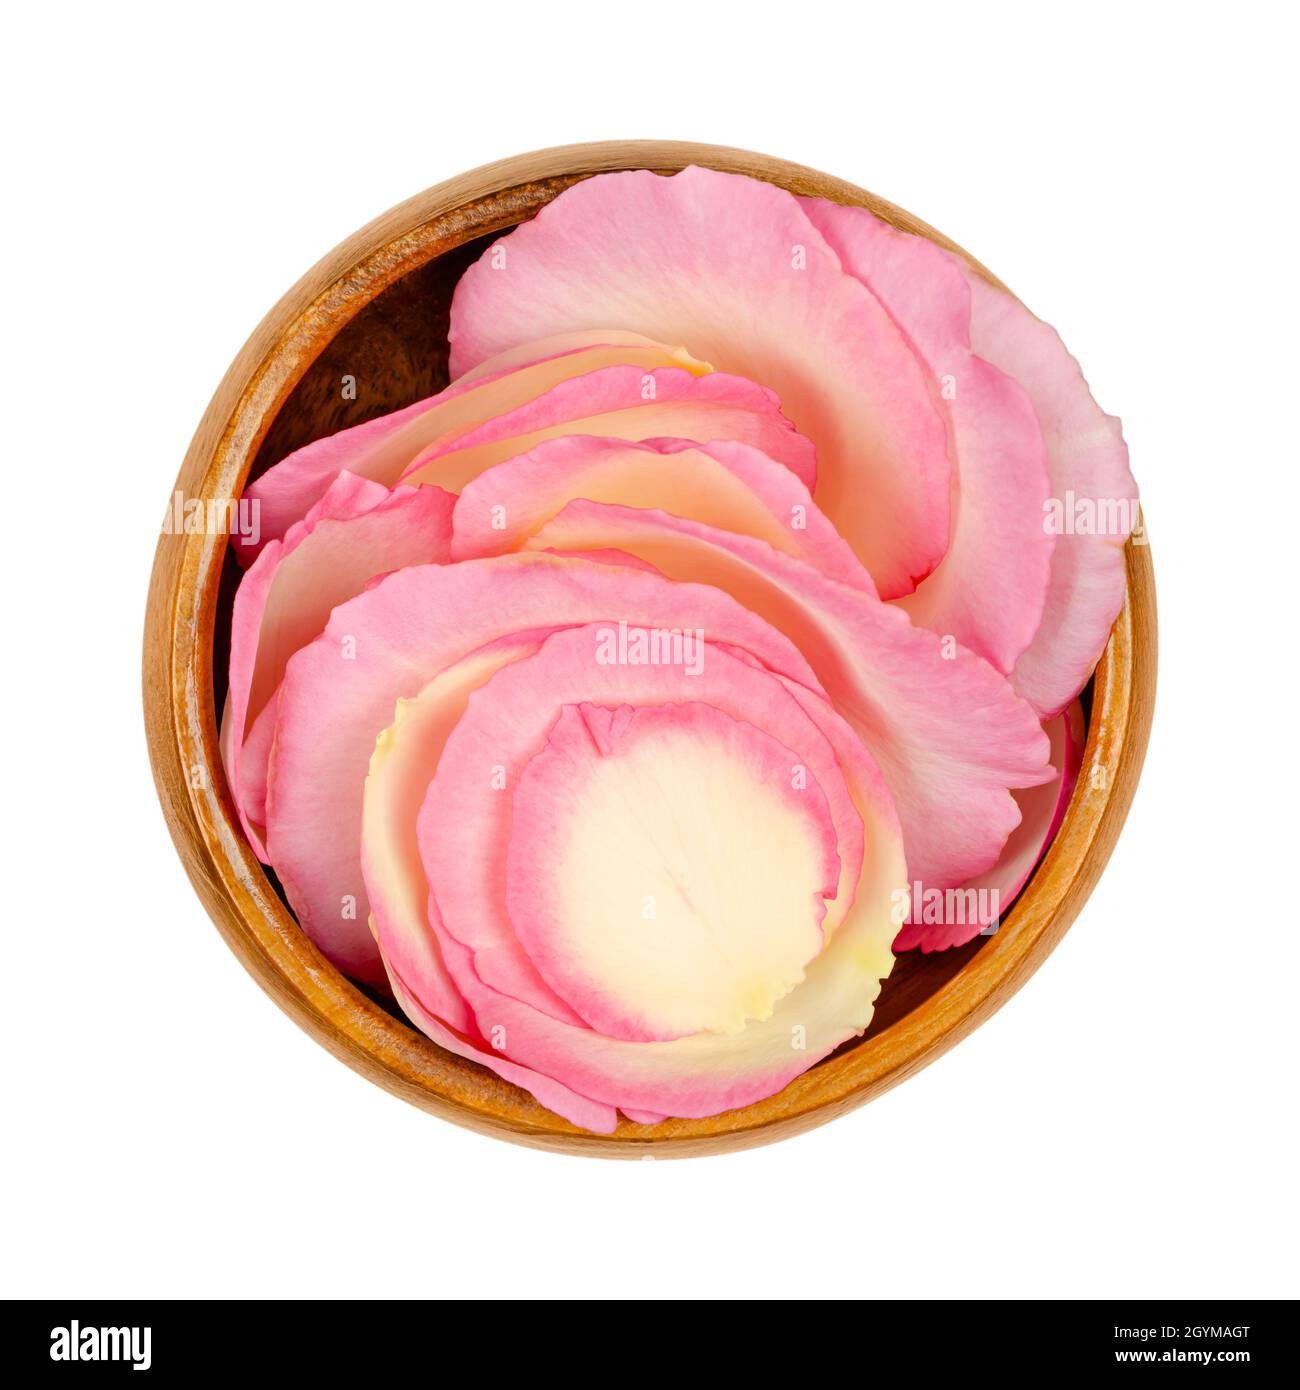 Pétales de rose dans un bol en bois.Pétales fraîchement cueillis d'une rose pâle de jardin, appelée rose chinoise, rose chinoise ou rose Bengale.Rosa chinensis. Banque D'Images